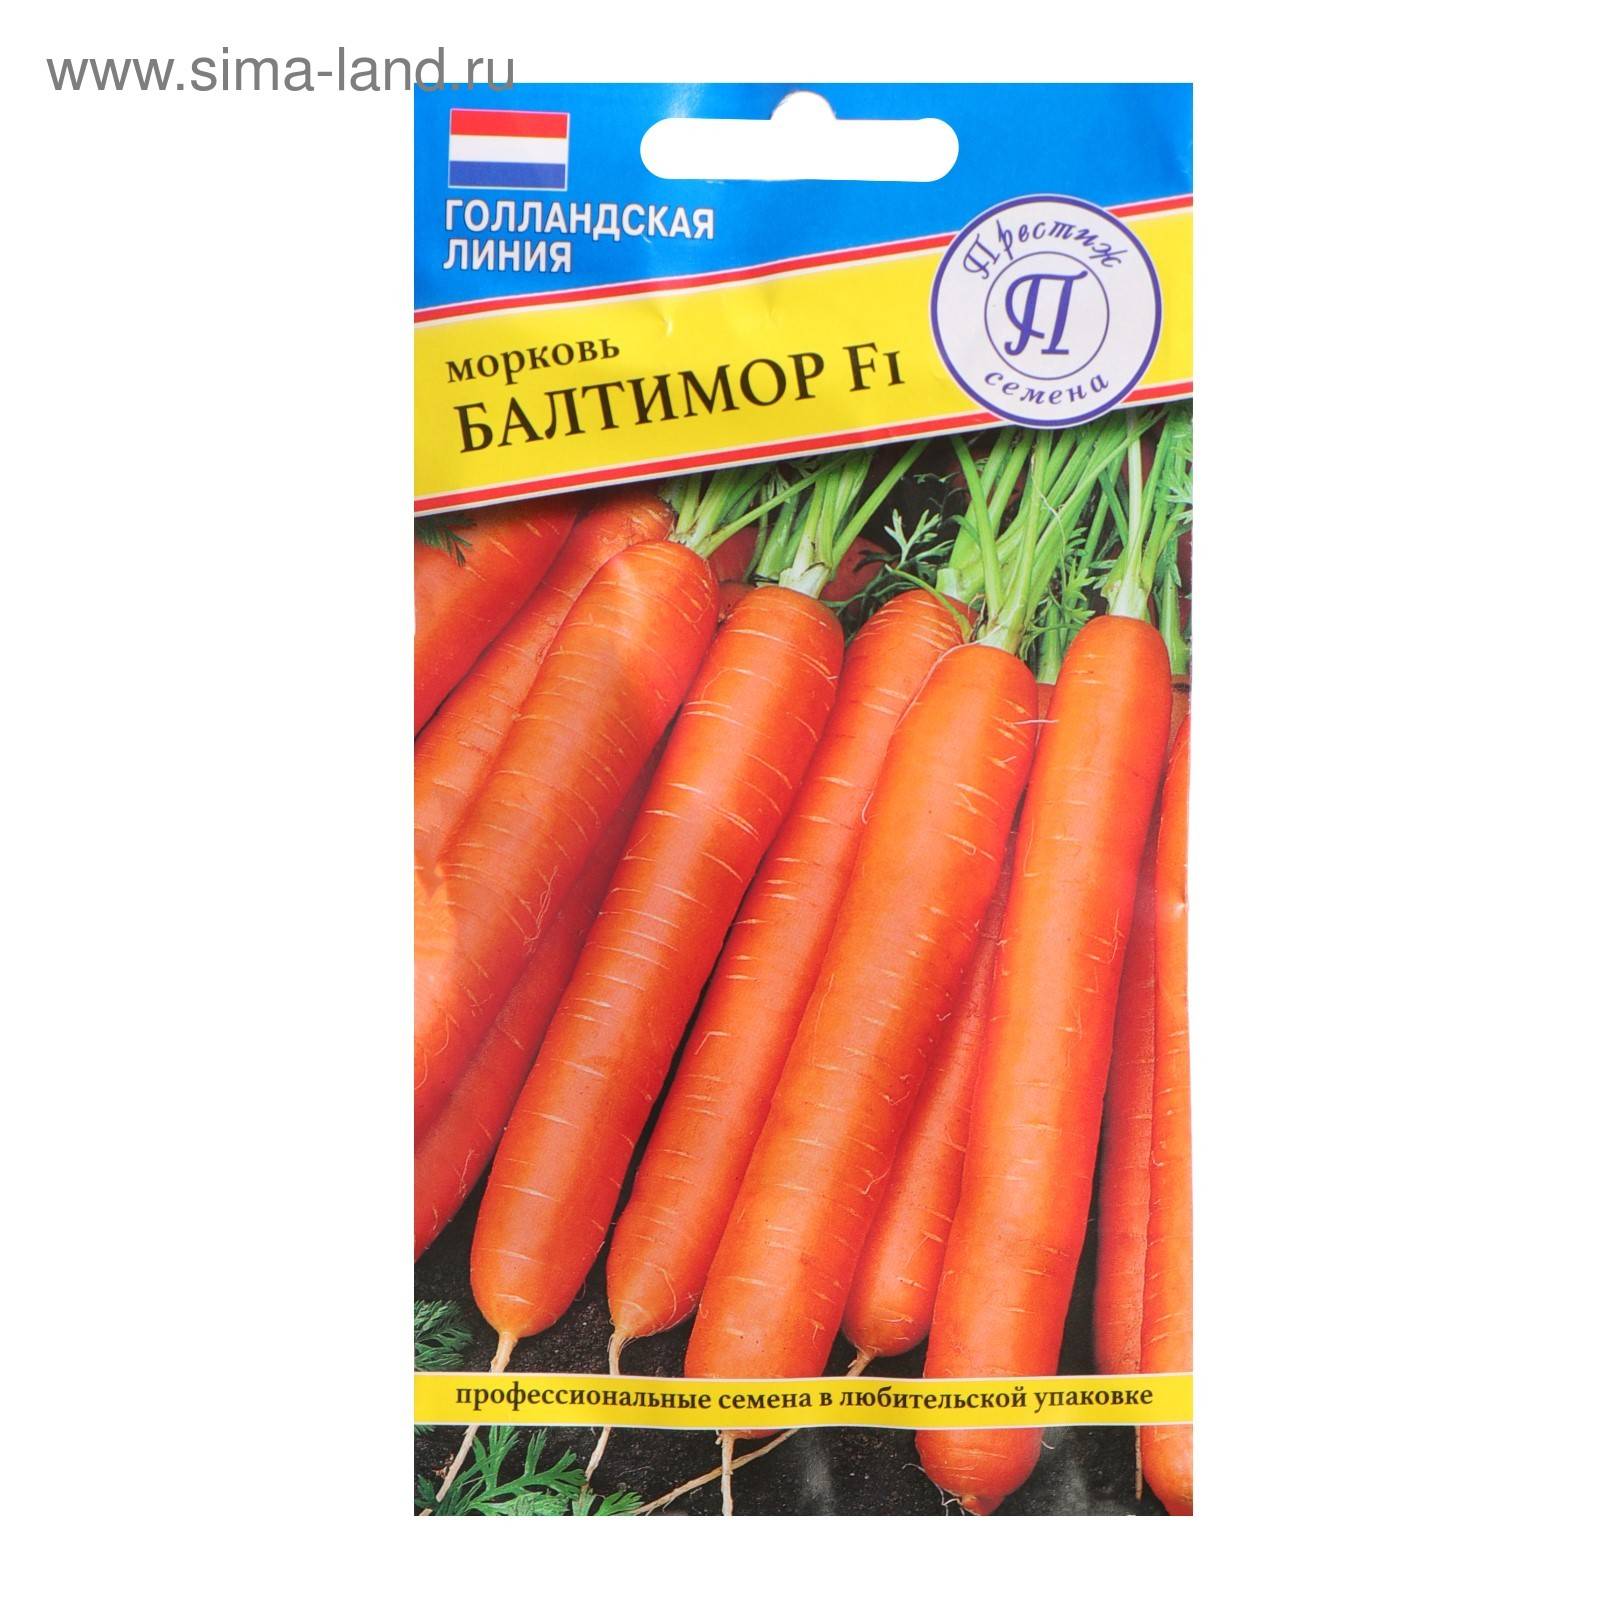 Морковь бангор f1: описание, фото, отзывы